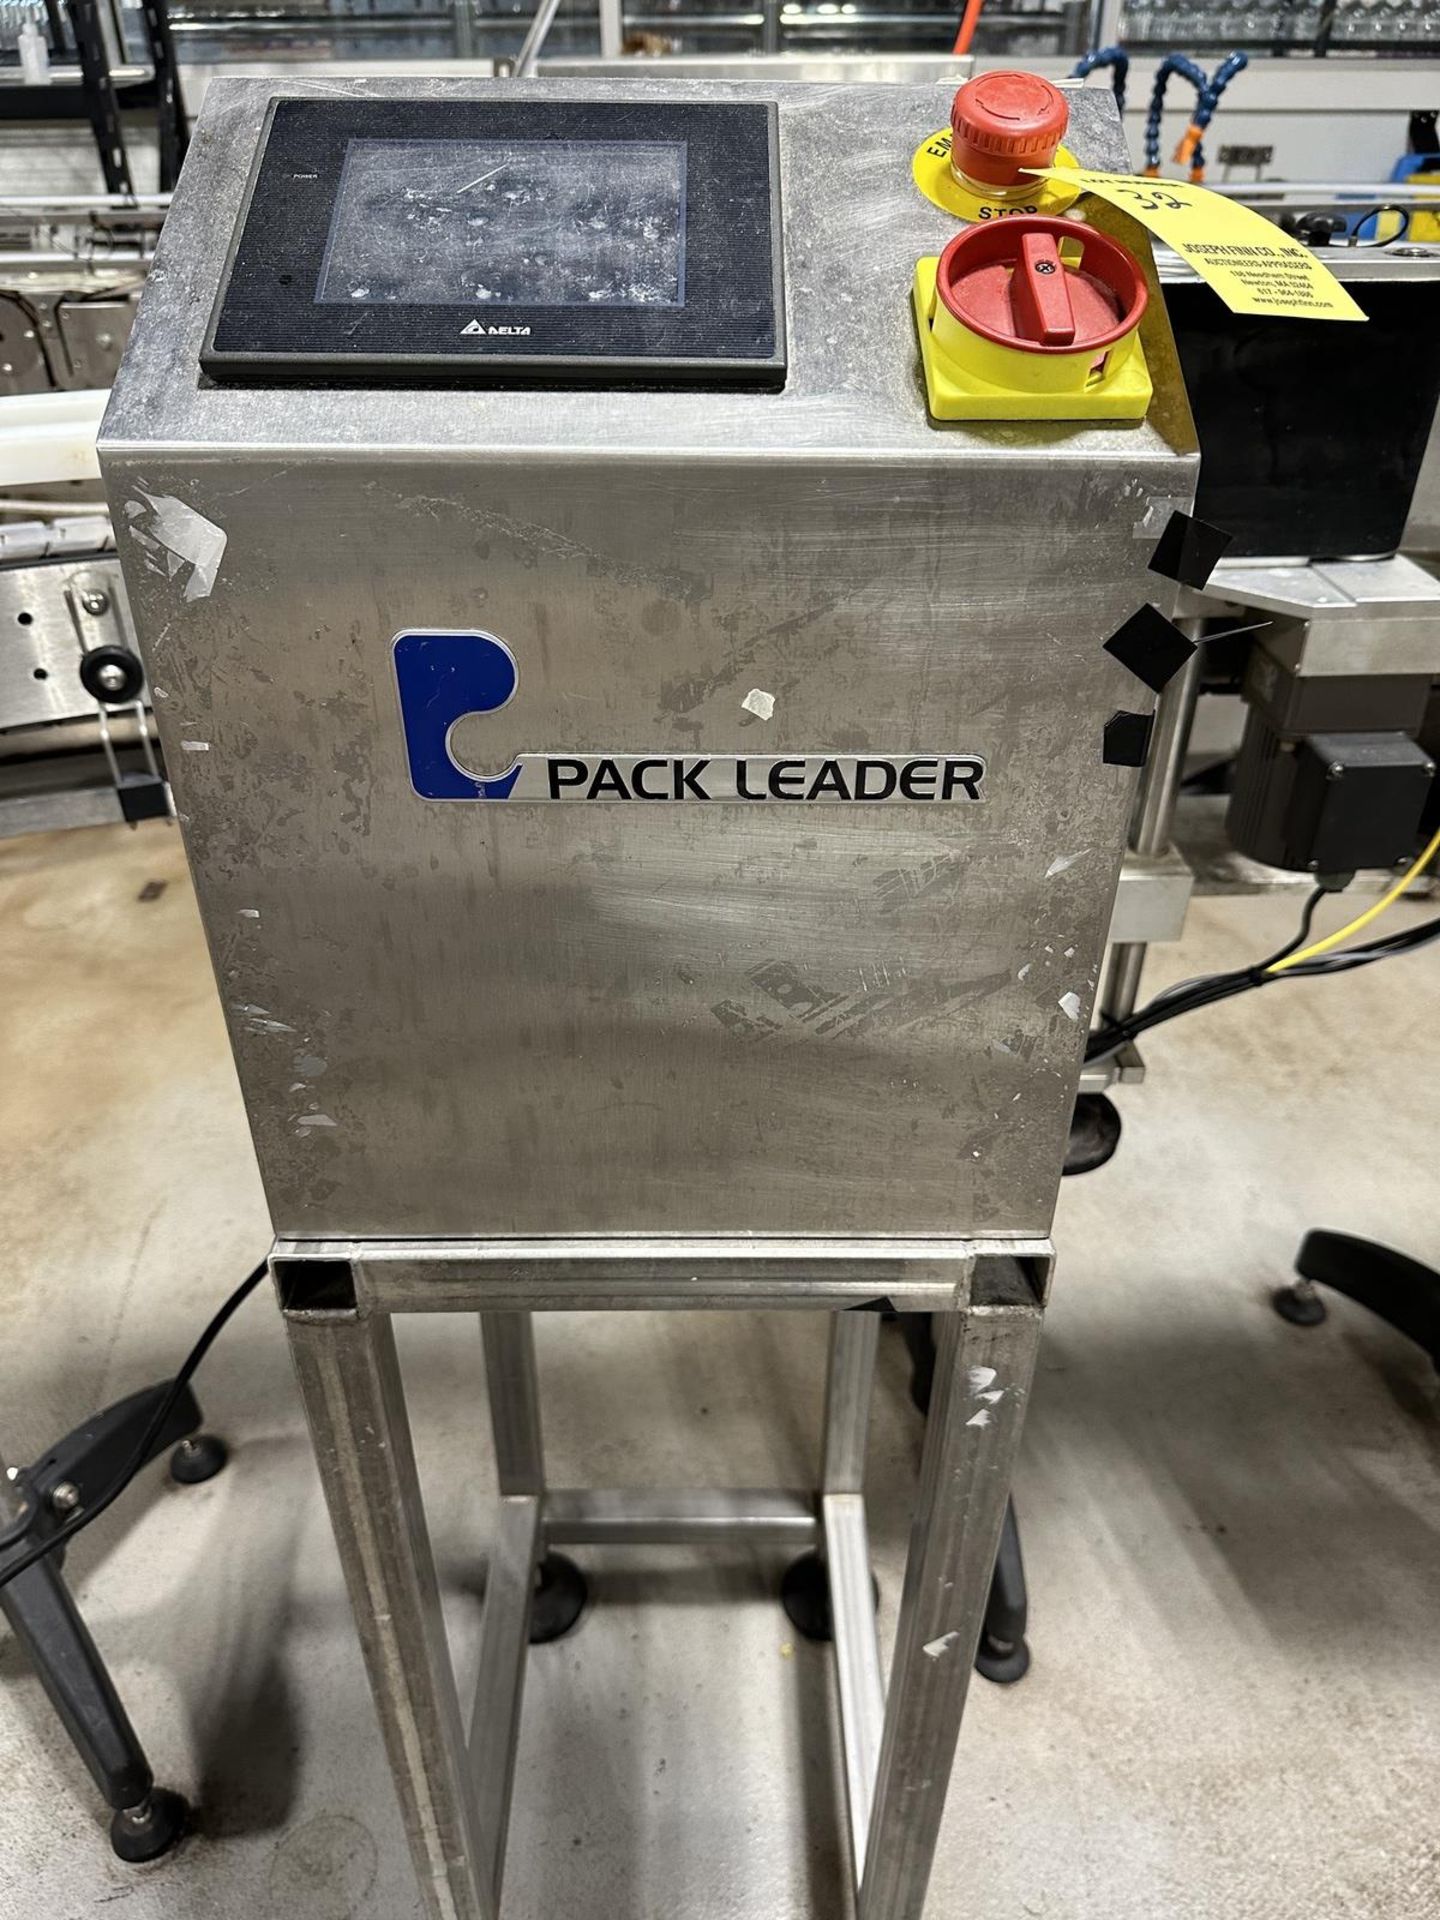 2017 Pack Leader Model PL-11 Wrap Around Labeller s/n 001102PL1100010608, Conveyor System, Invertech - Image 2 of 7